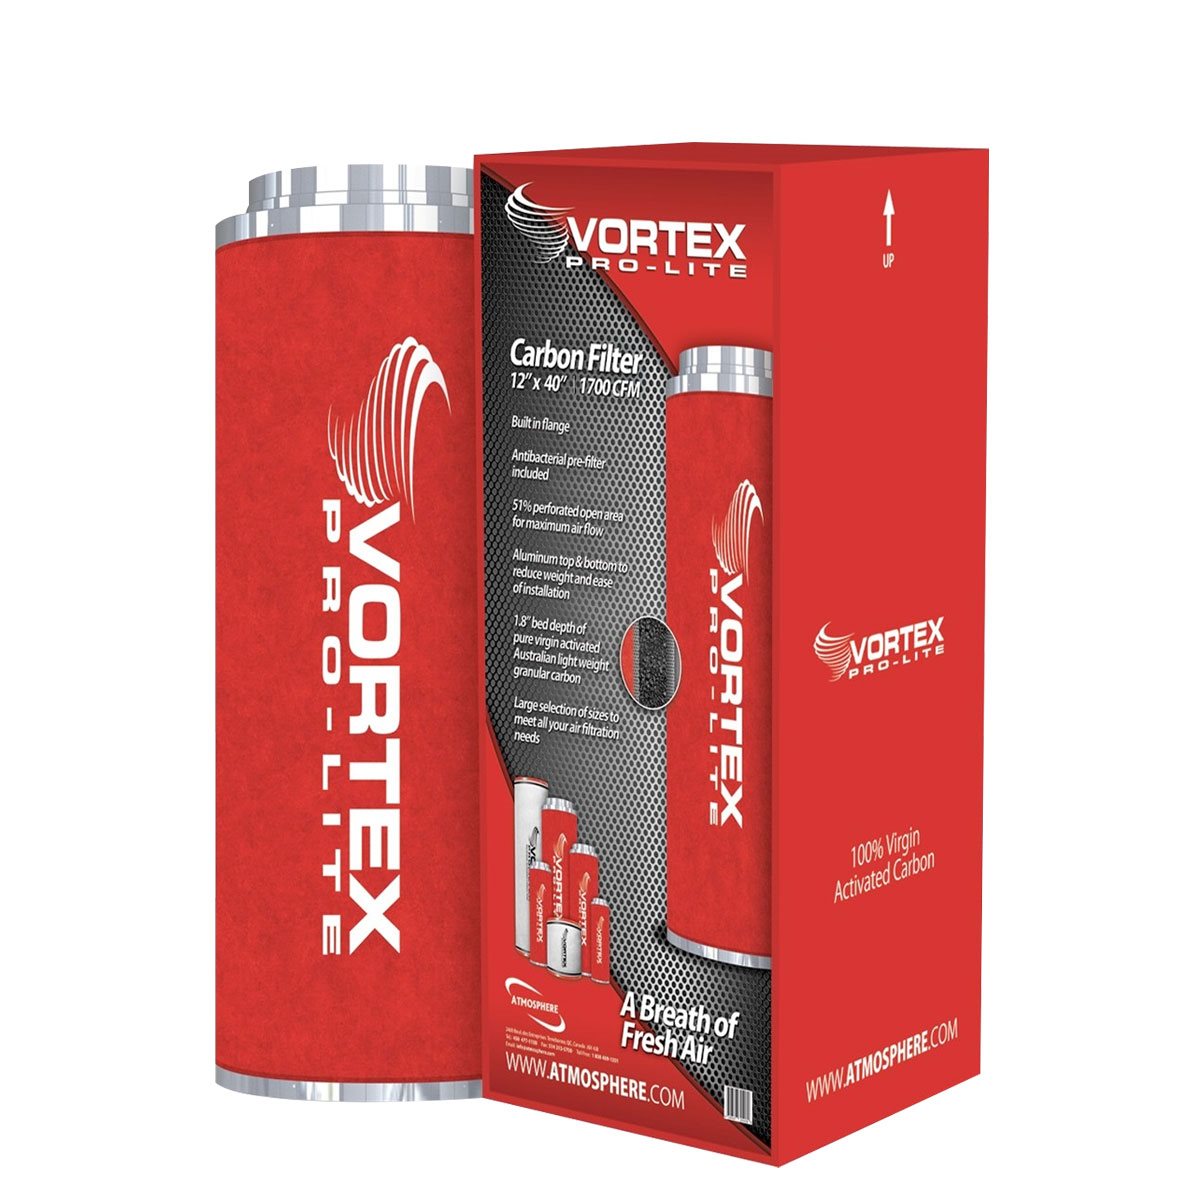 Vortex Pro-Lite Filter 14" x 40" (2100 CFM)